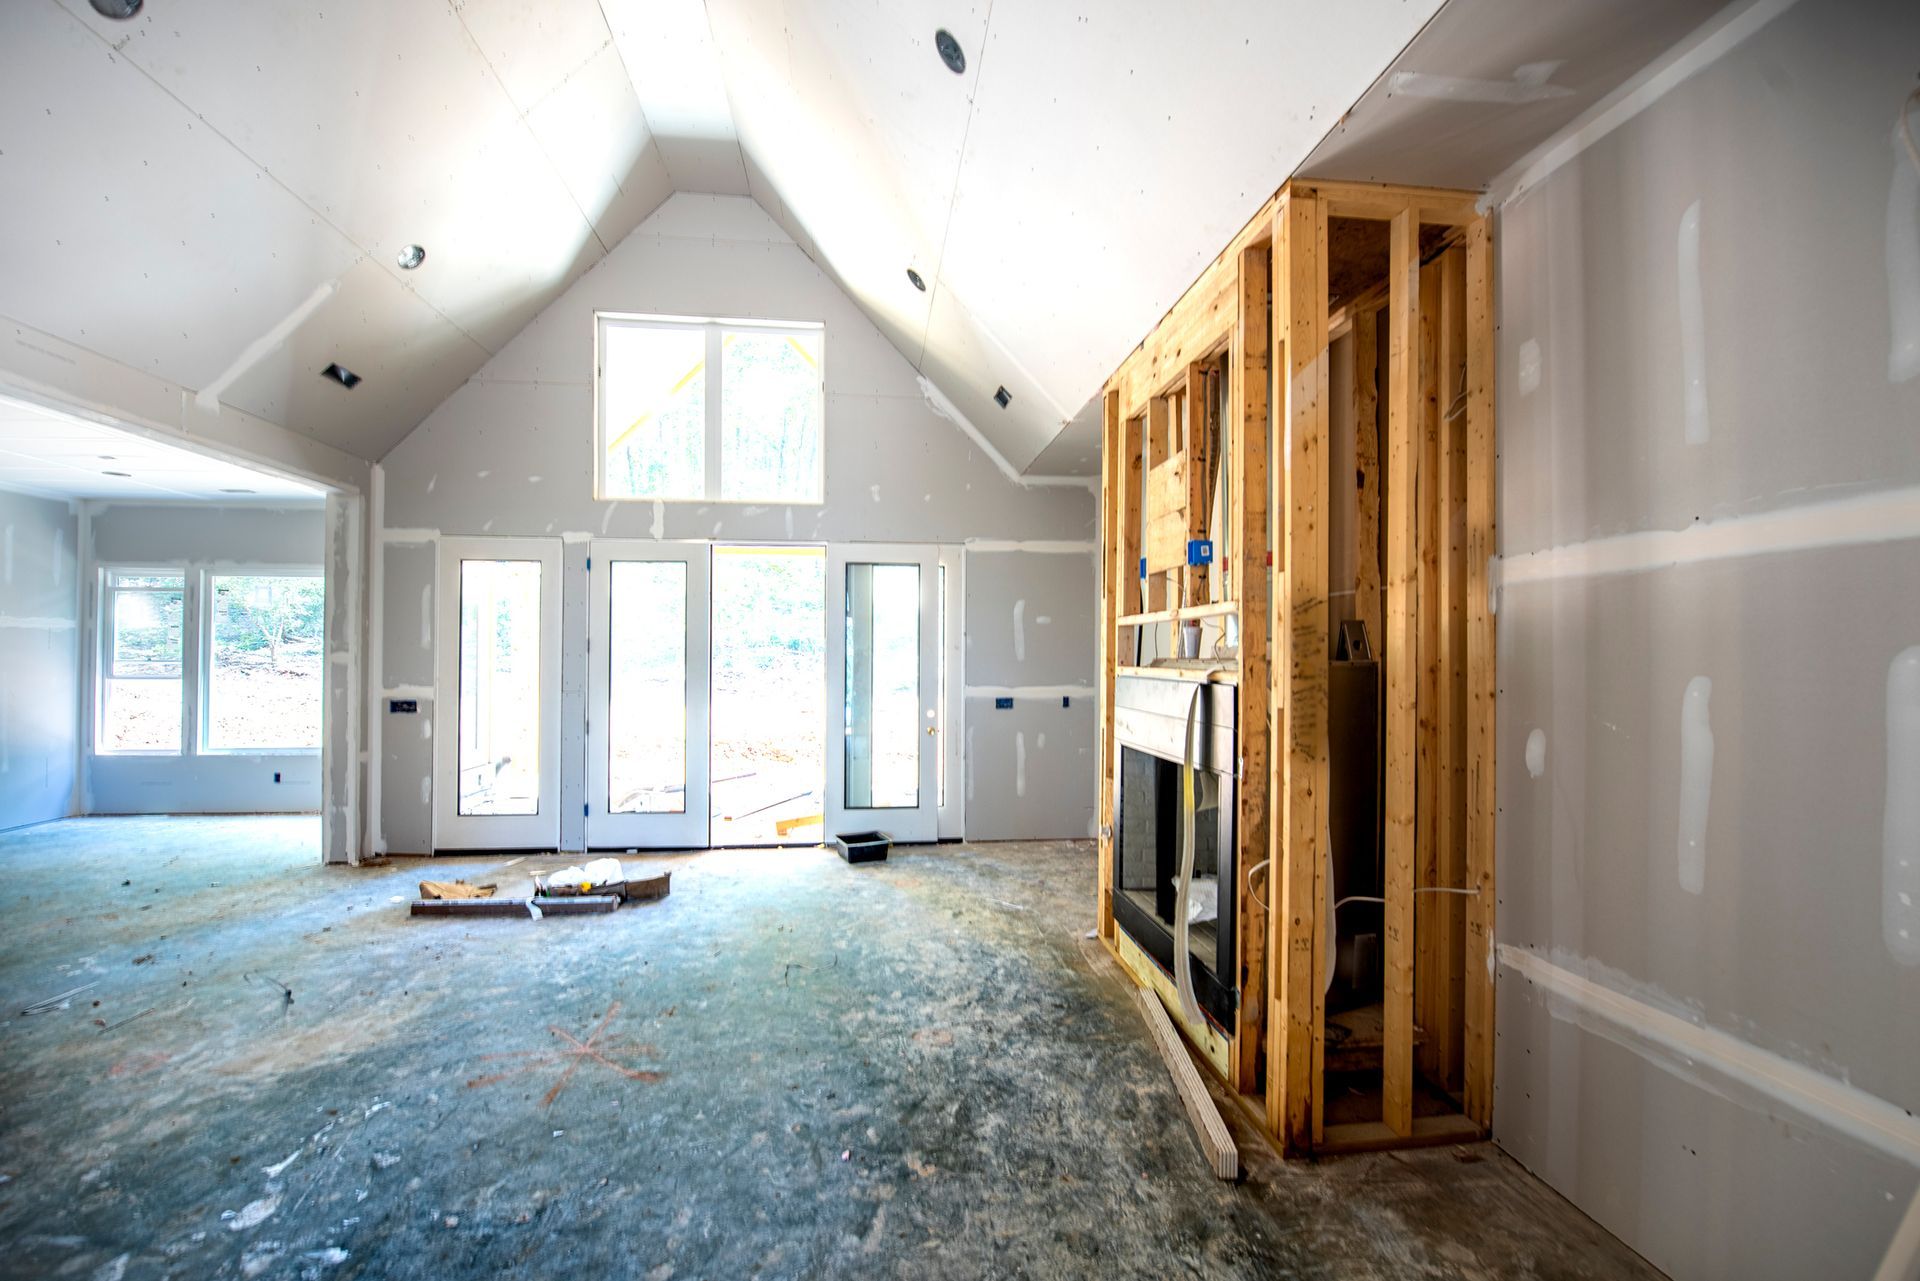 Construction of New Home | Kilmarnock, VA | My Handyman